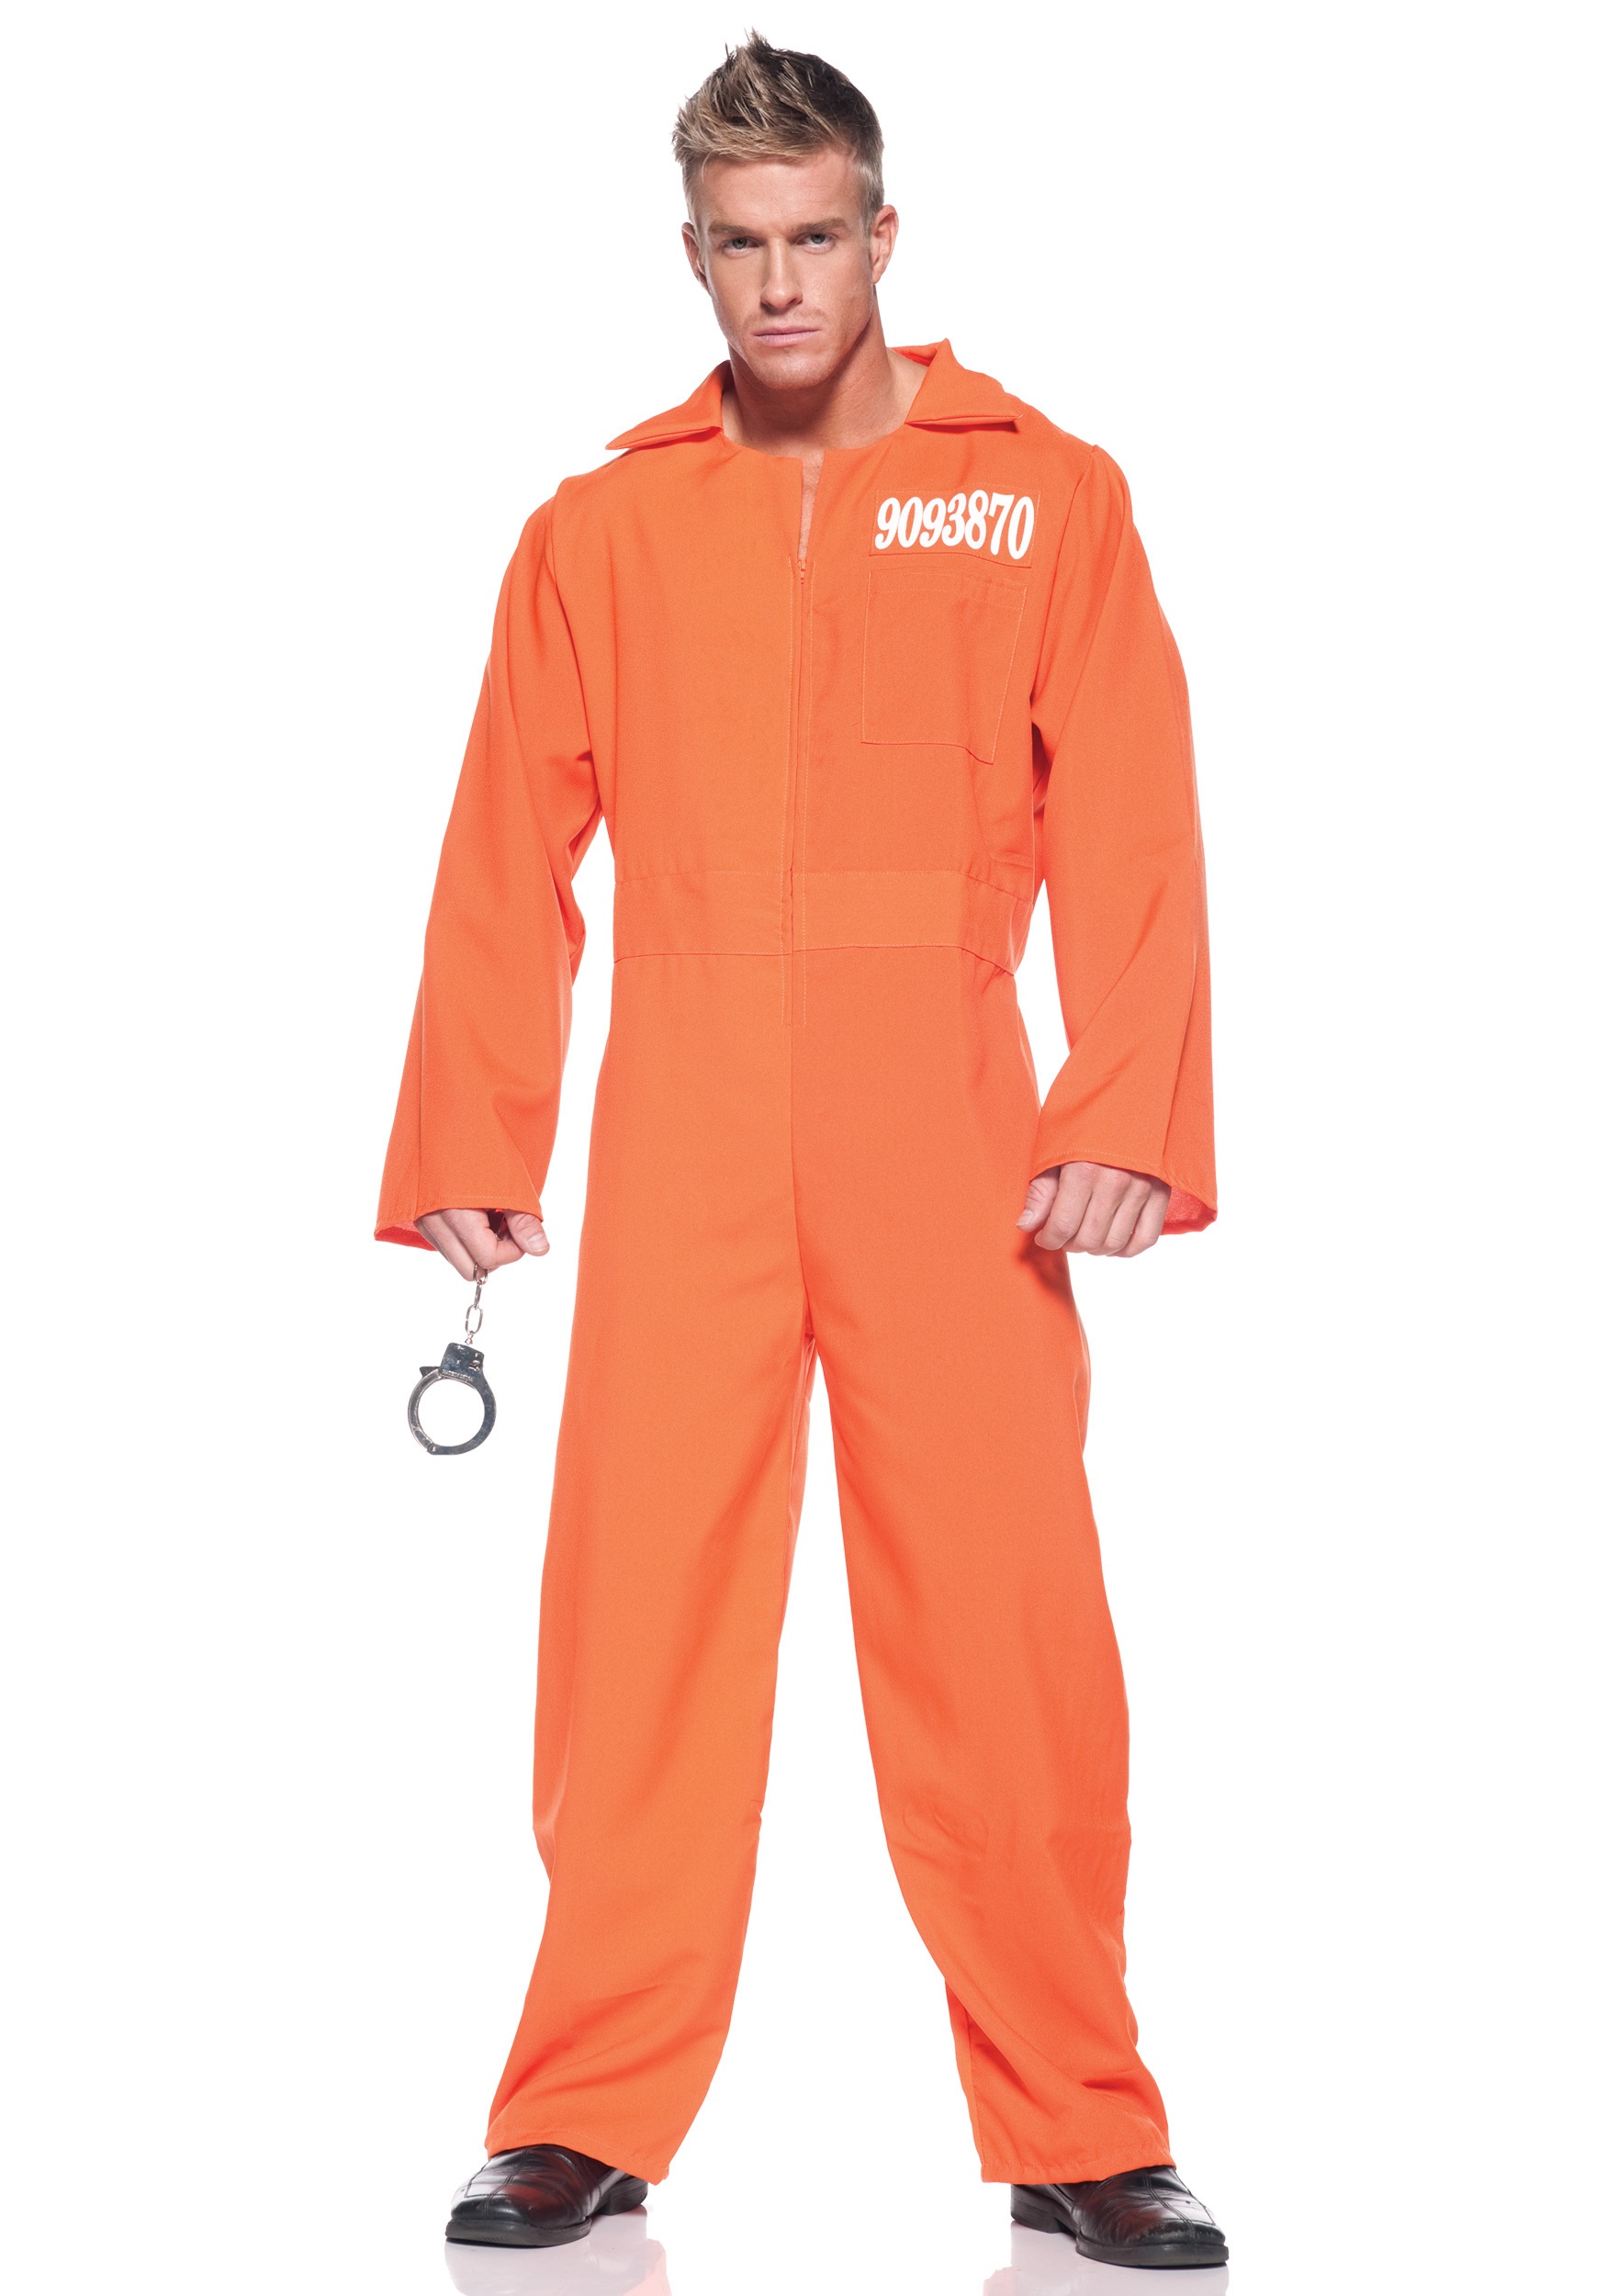 Men's Prison Jumpsuit Fancy Dress Costume